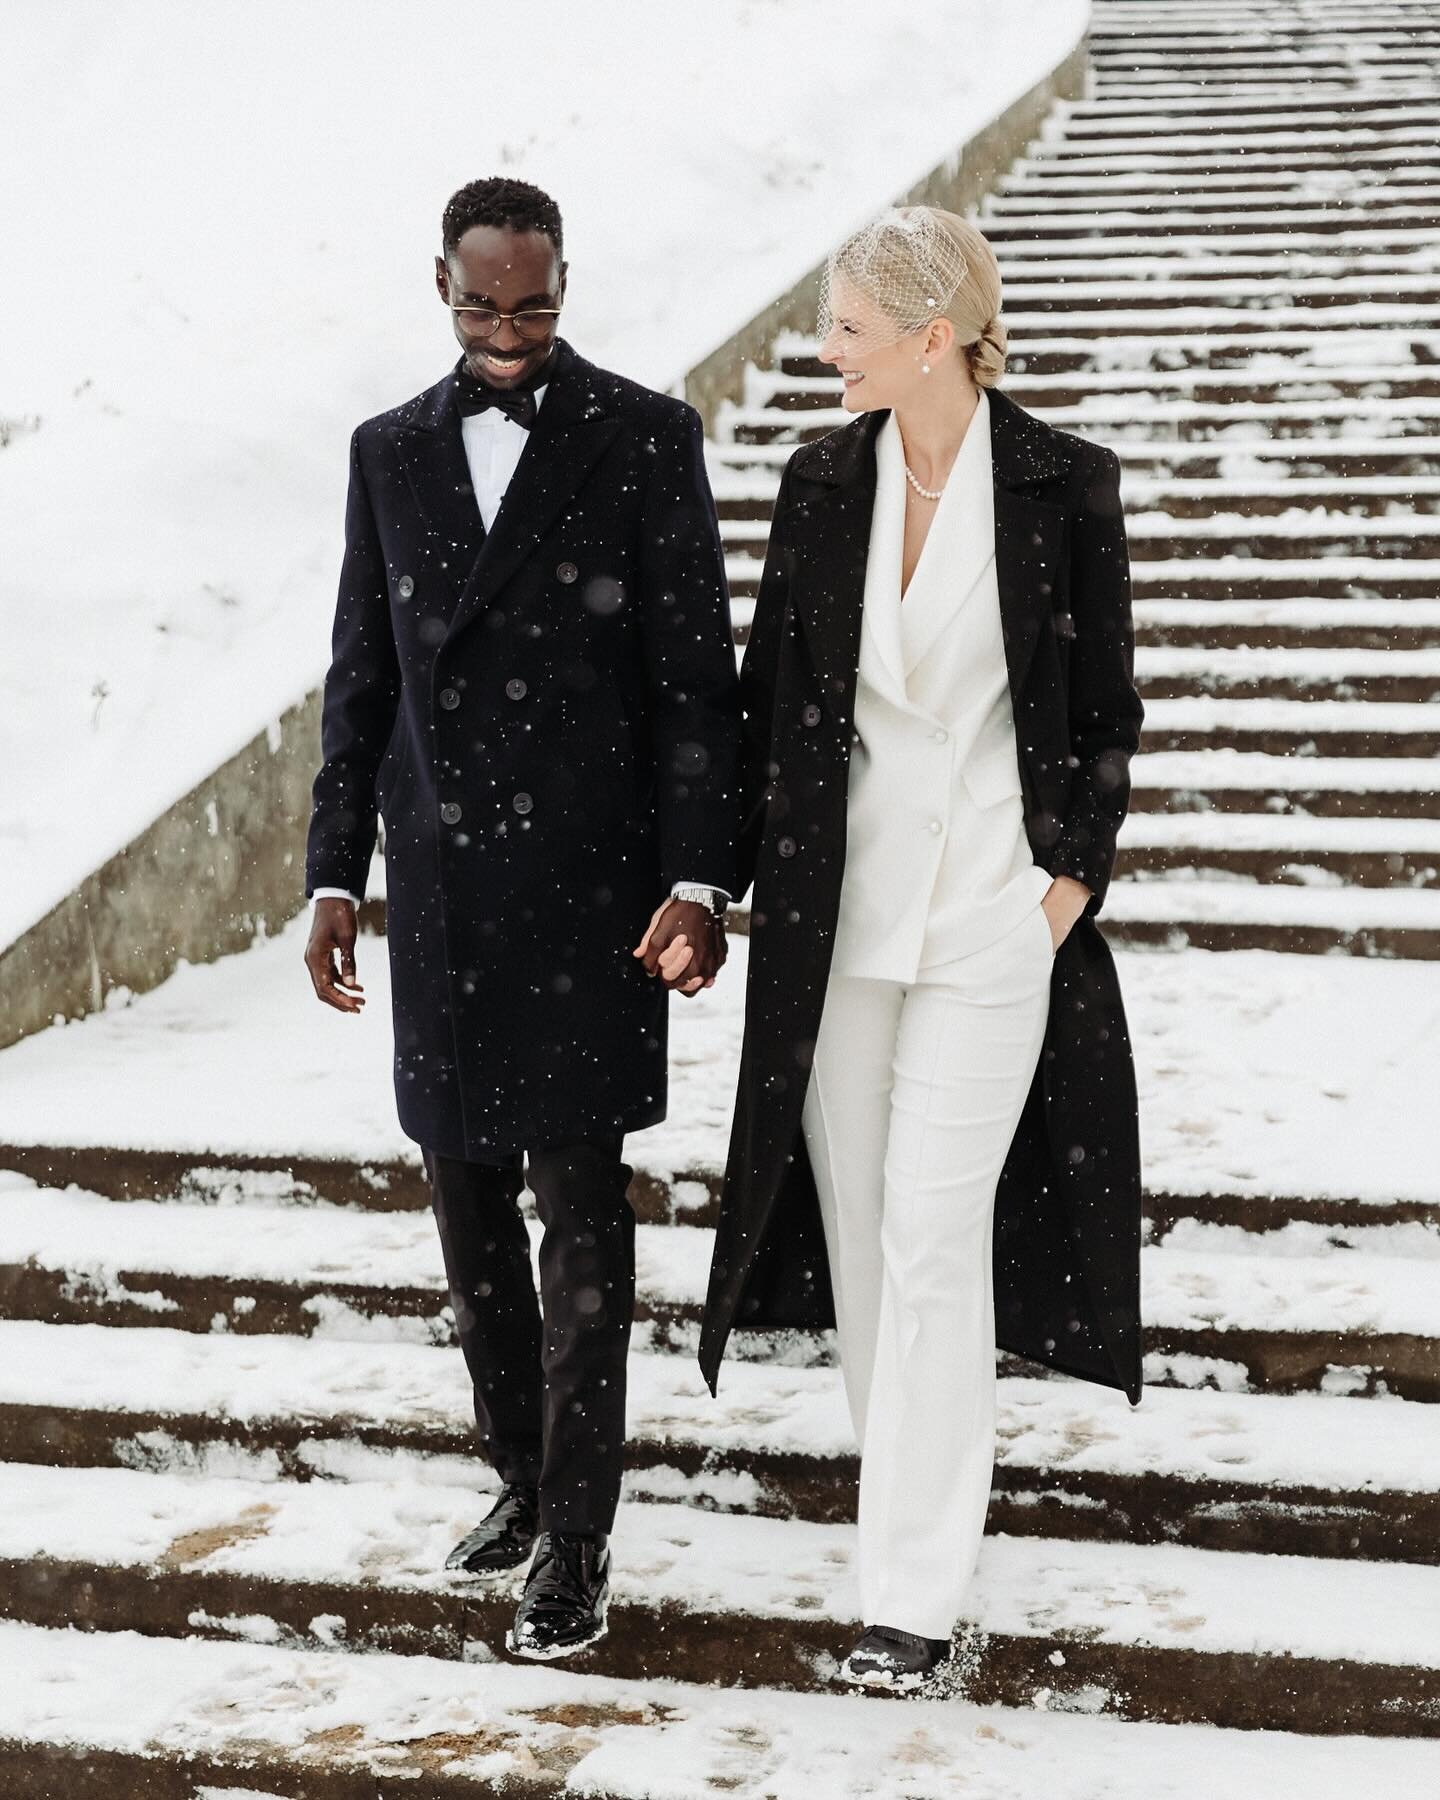 Madara, Jay and epic snowfall on their wedding day. ❄️

#winterwedding #kāzas #fotogrāfs #ziemaskāzas 

Fotogrāfijas aizliegts pārpublicēt.